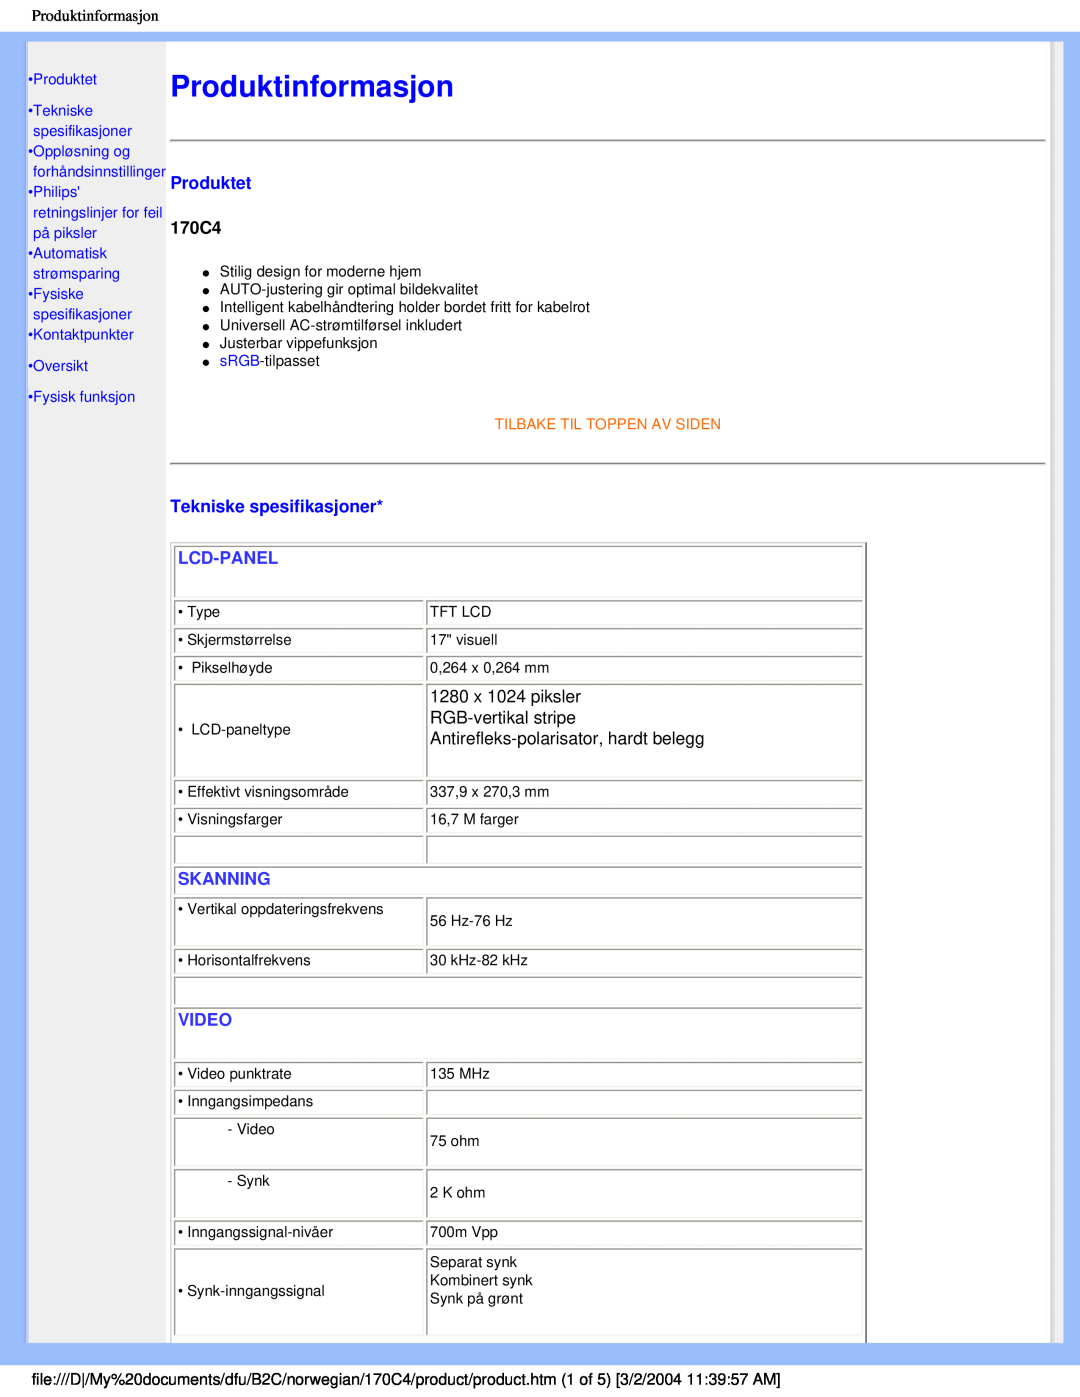 Philips 170C4 user manual Produktinformasjon, Produktet, Tekniske spesifikasjoner, Lcd-Panel, Skanning, Video 